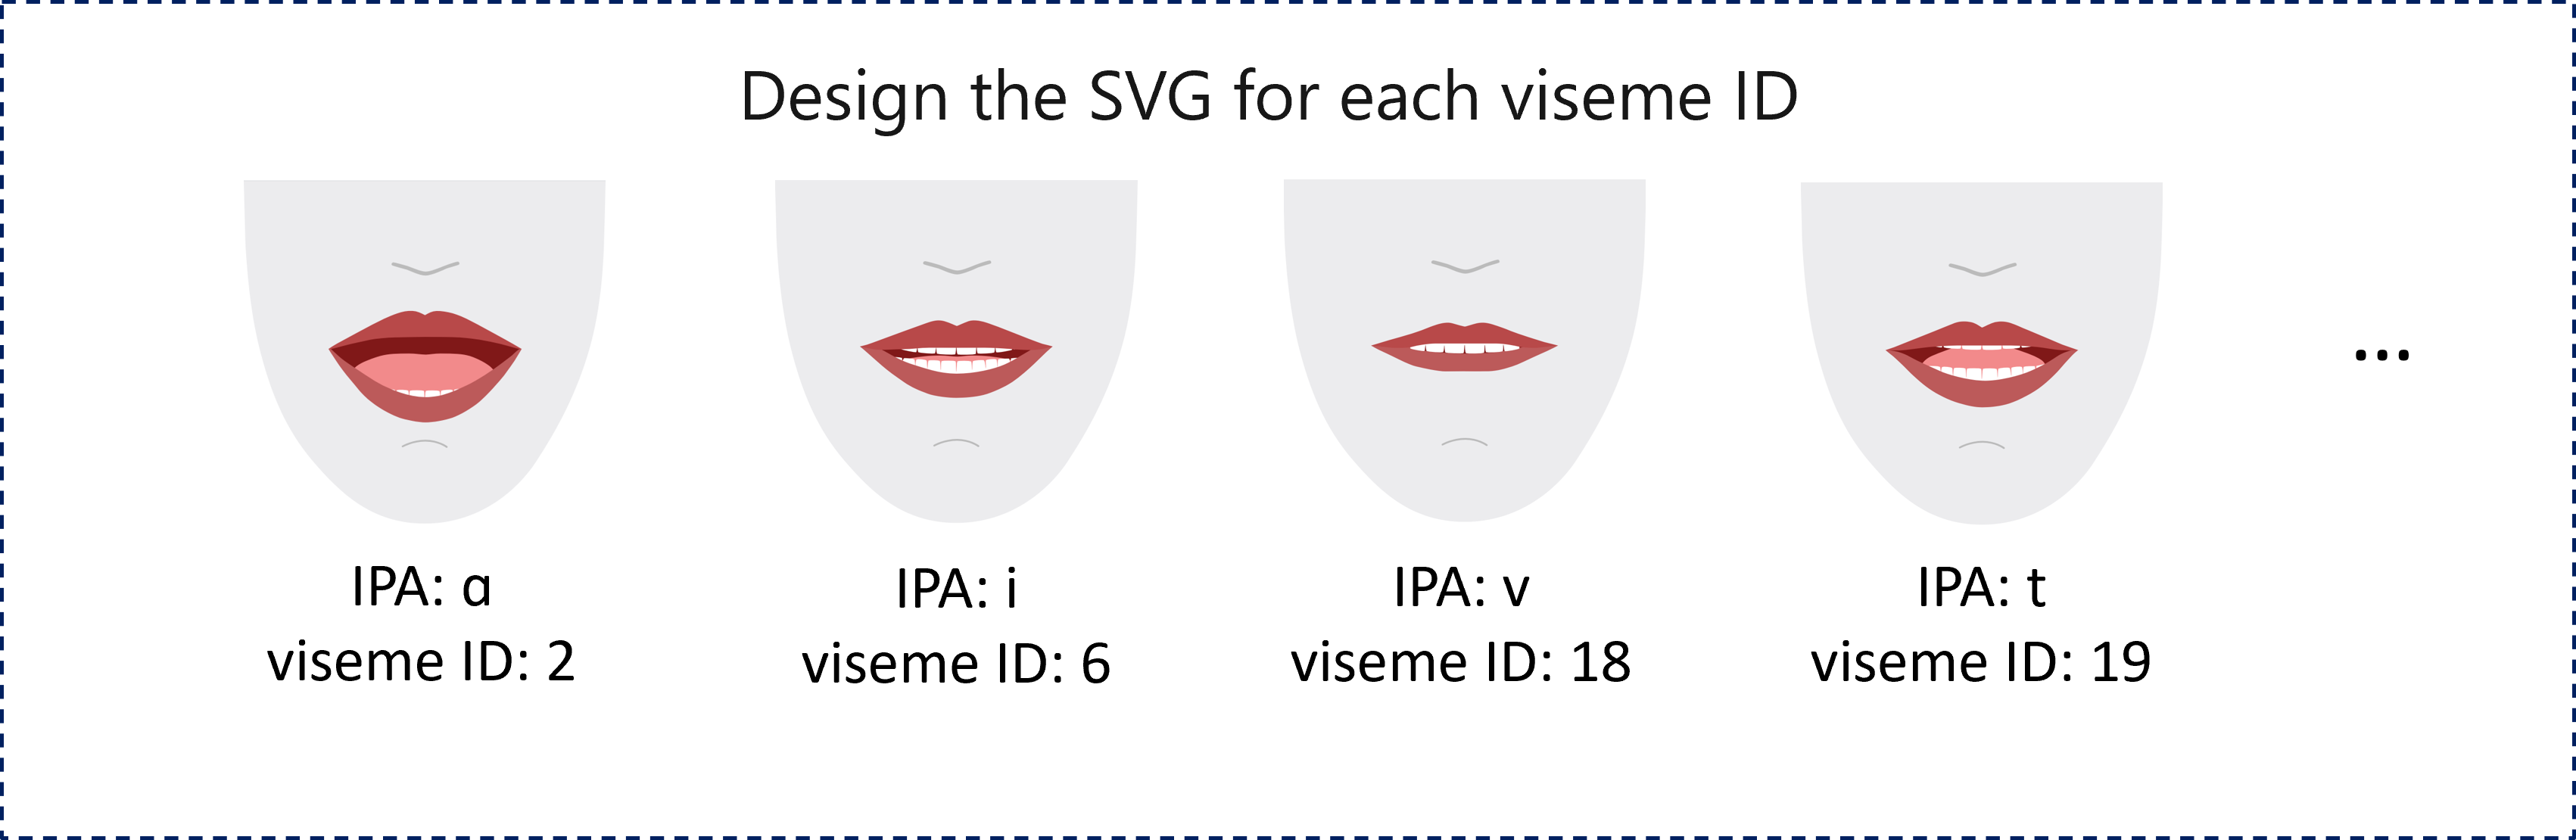 Cuplikan layar menunjukkan contoh perenderan 2D empat bibir merah, masing-masingnya merepresentasikan ID viseme berbeda yang sesuai dengan fonem.